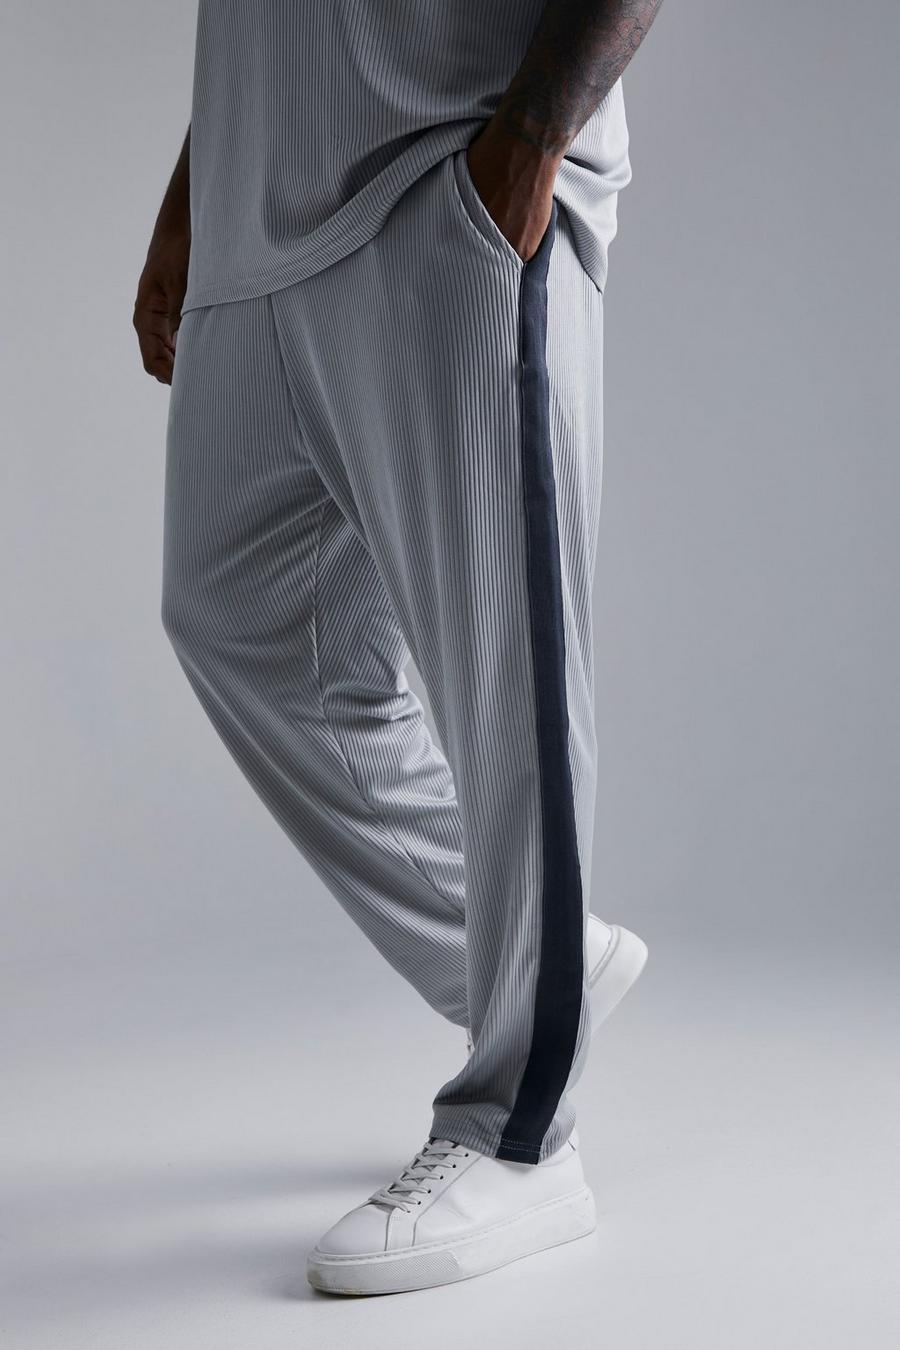 Pantaloni tuta Plus Size affusolati alla caviglia con pieghe e striscia laterale, Grey